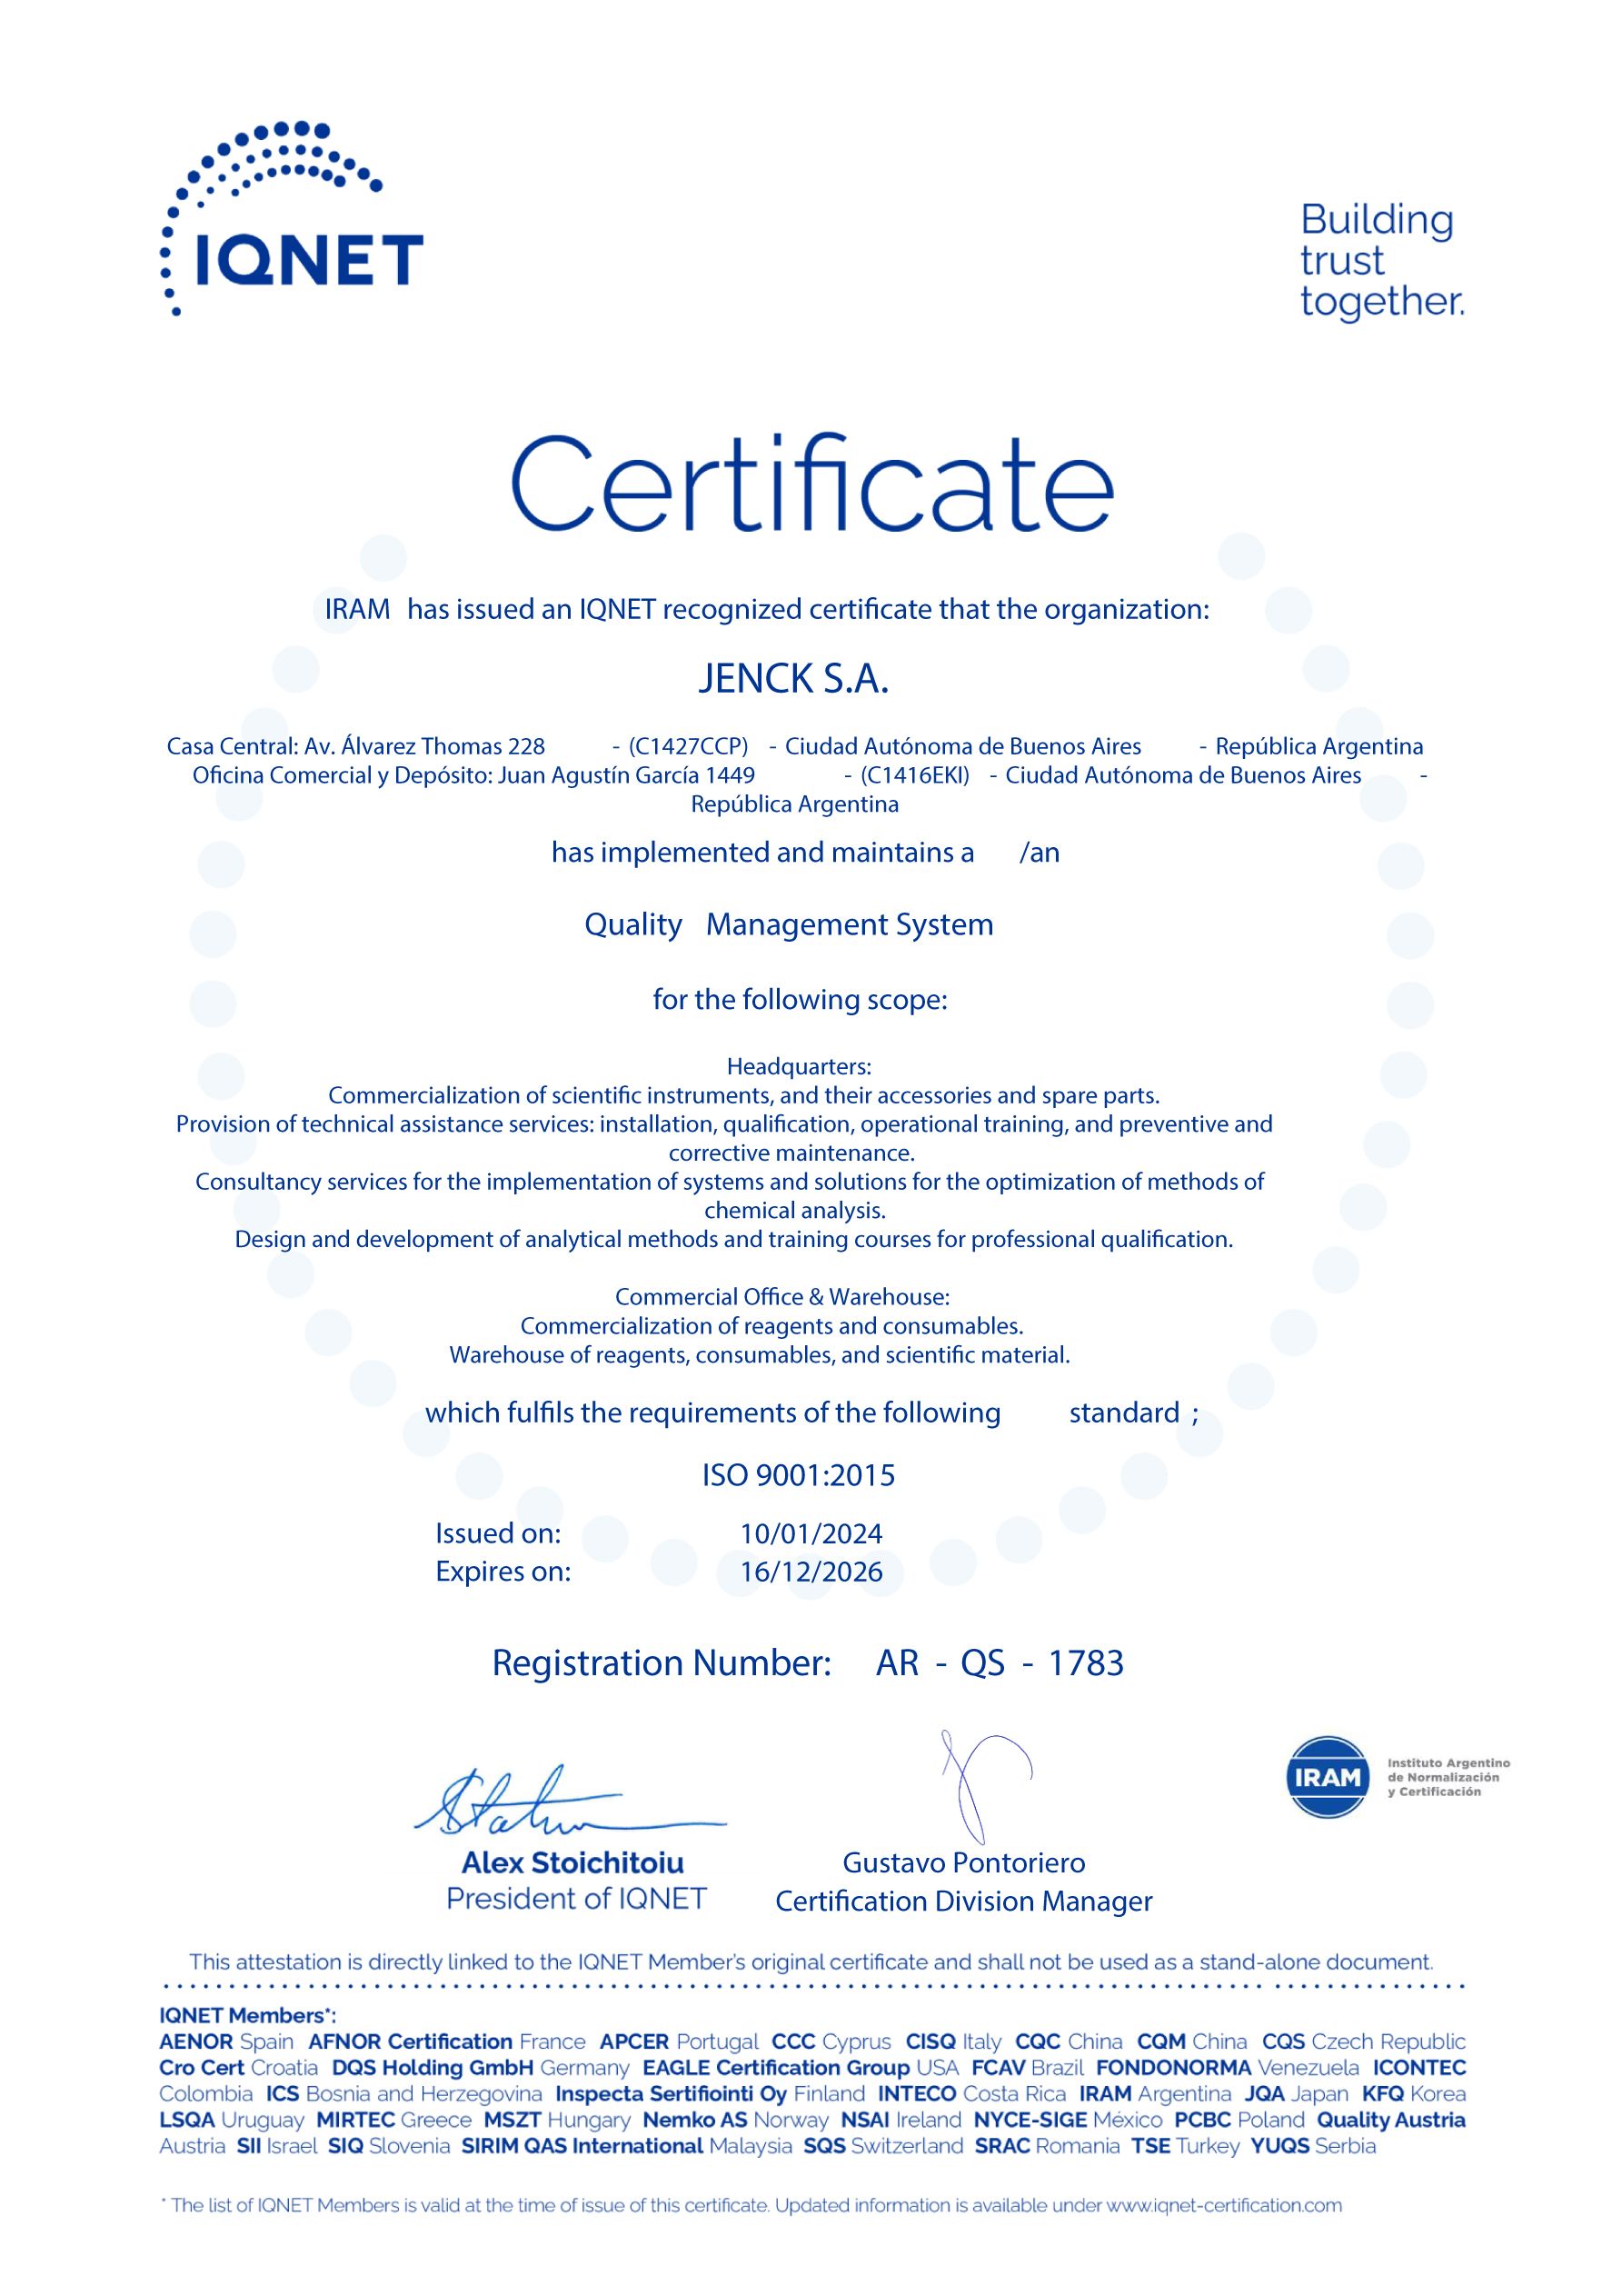 Certificado IQNet de Jenck